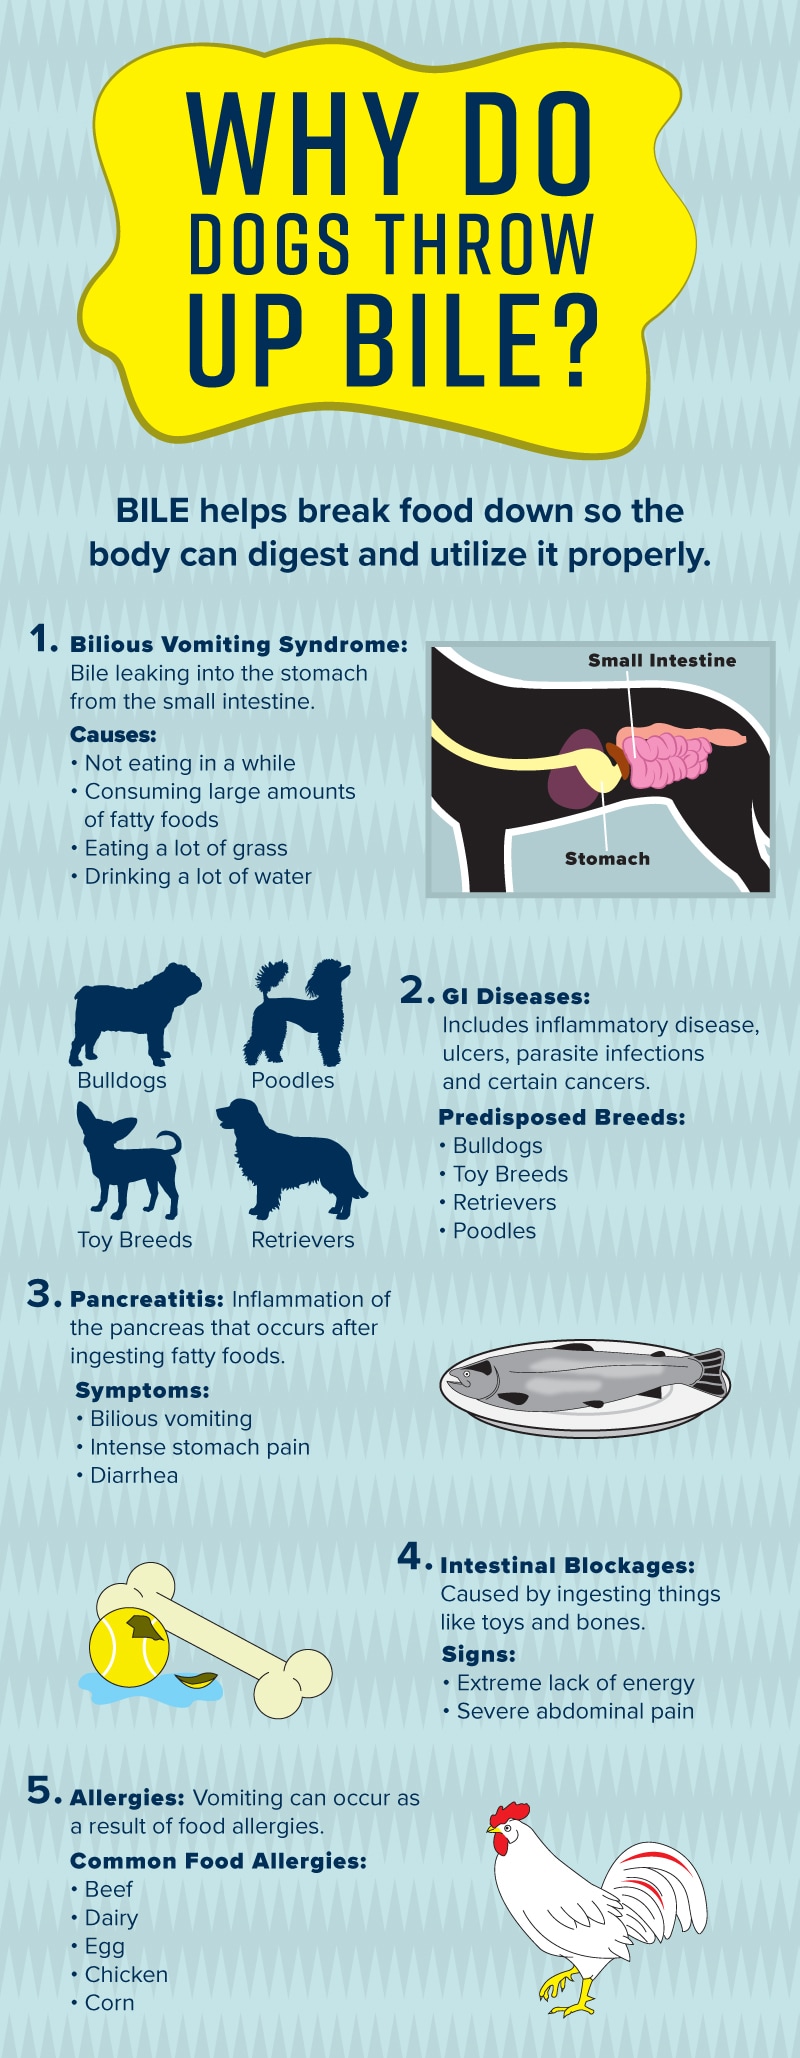 导致狗狗呕吐胆汁的原因包括胆汁性呕吐综合征、胃肠道疾病、胰腺炎、肠阻塞和食物过敏。